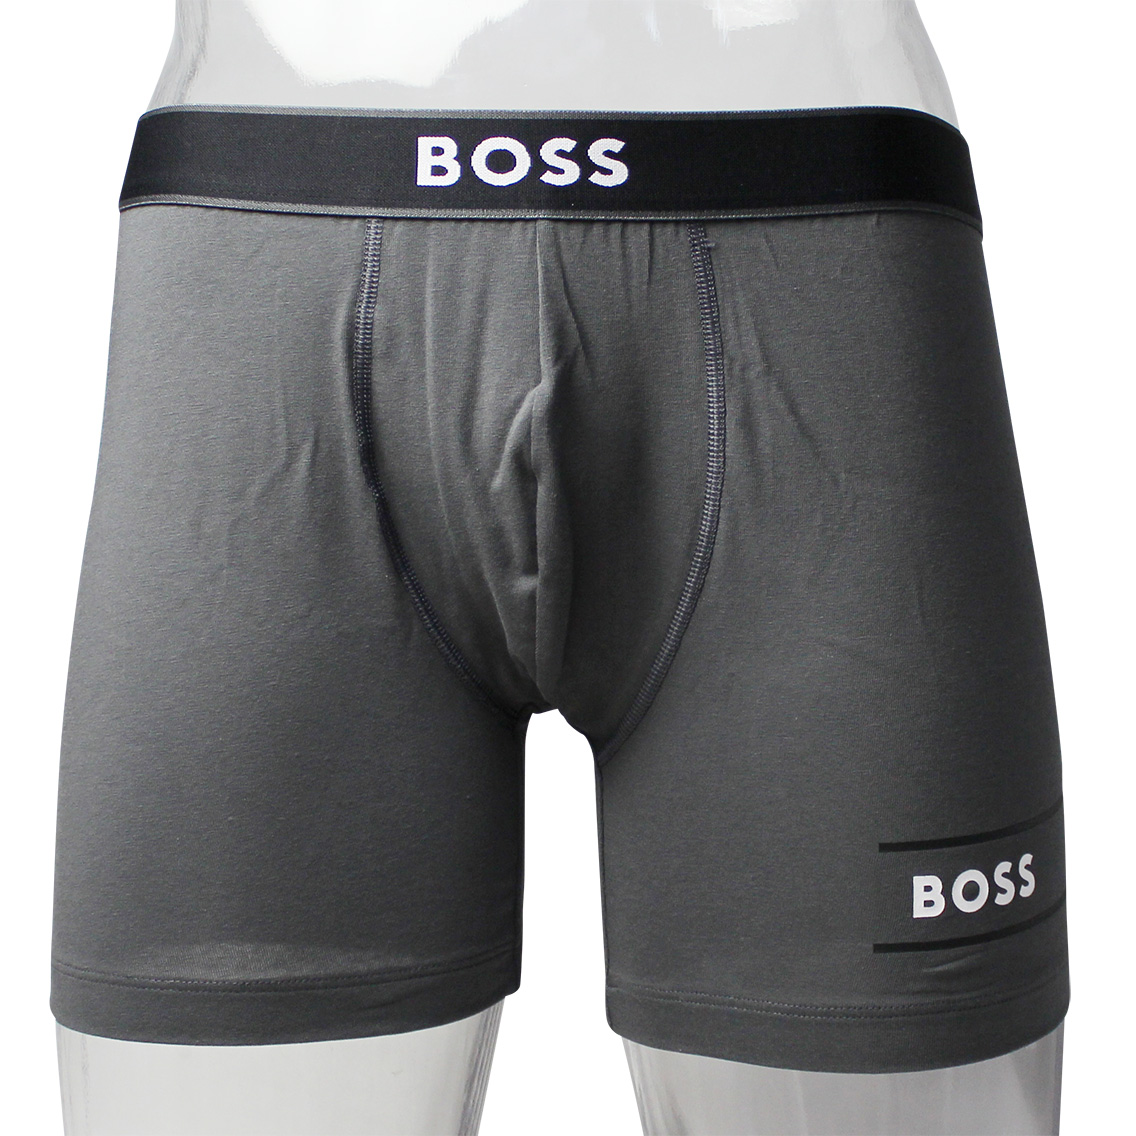 [50468330-022] HUGO BOSS ヒューゴボス ボクサーパンツ メンズ アンダーウェア インナー 男性 下着 ブランド おすすめ 人気 プレゼント